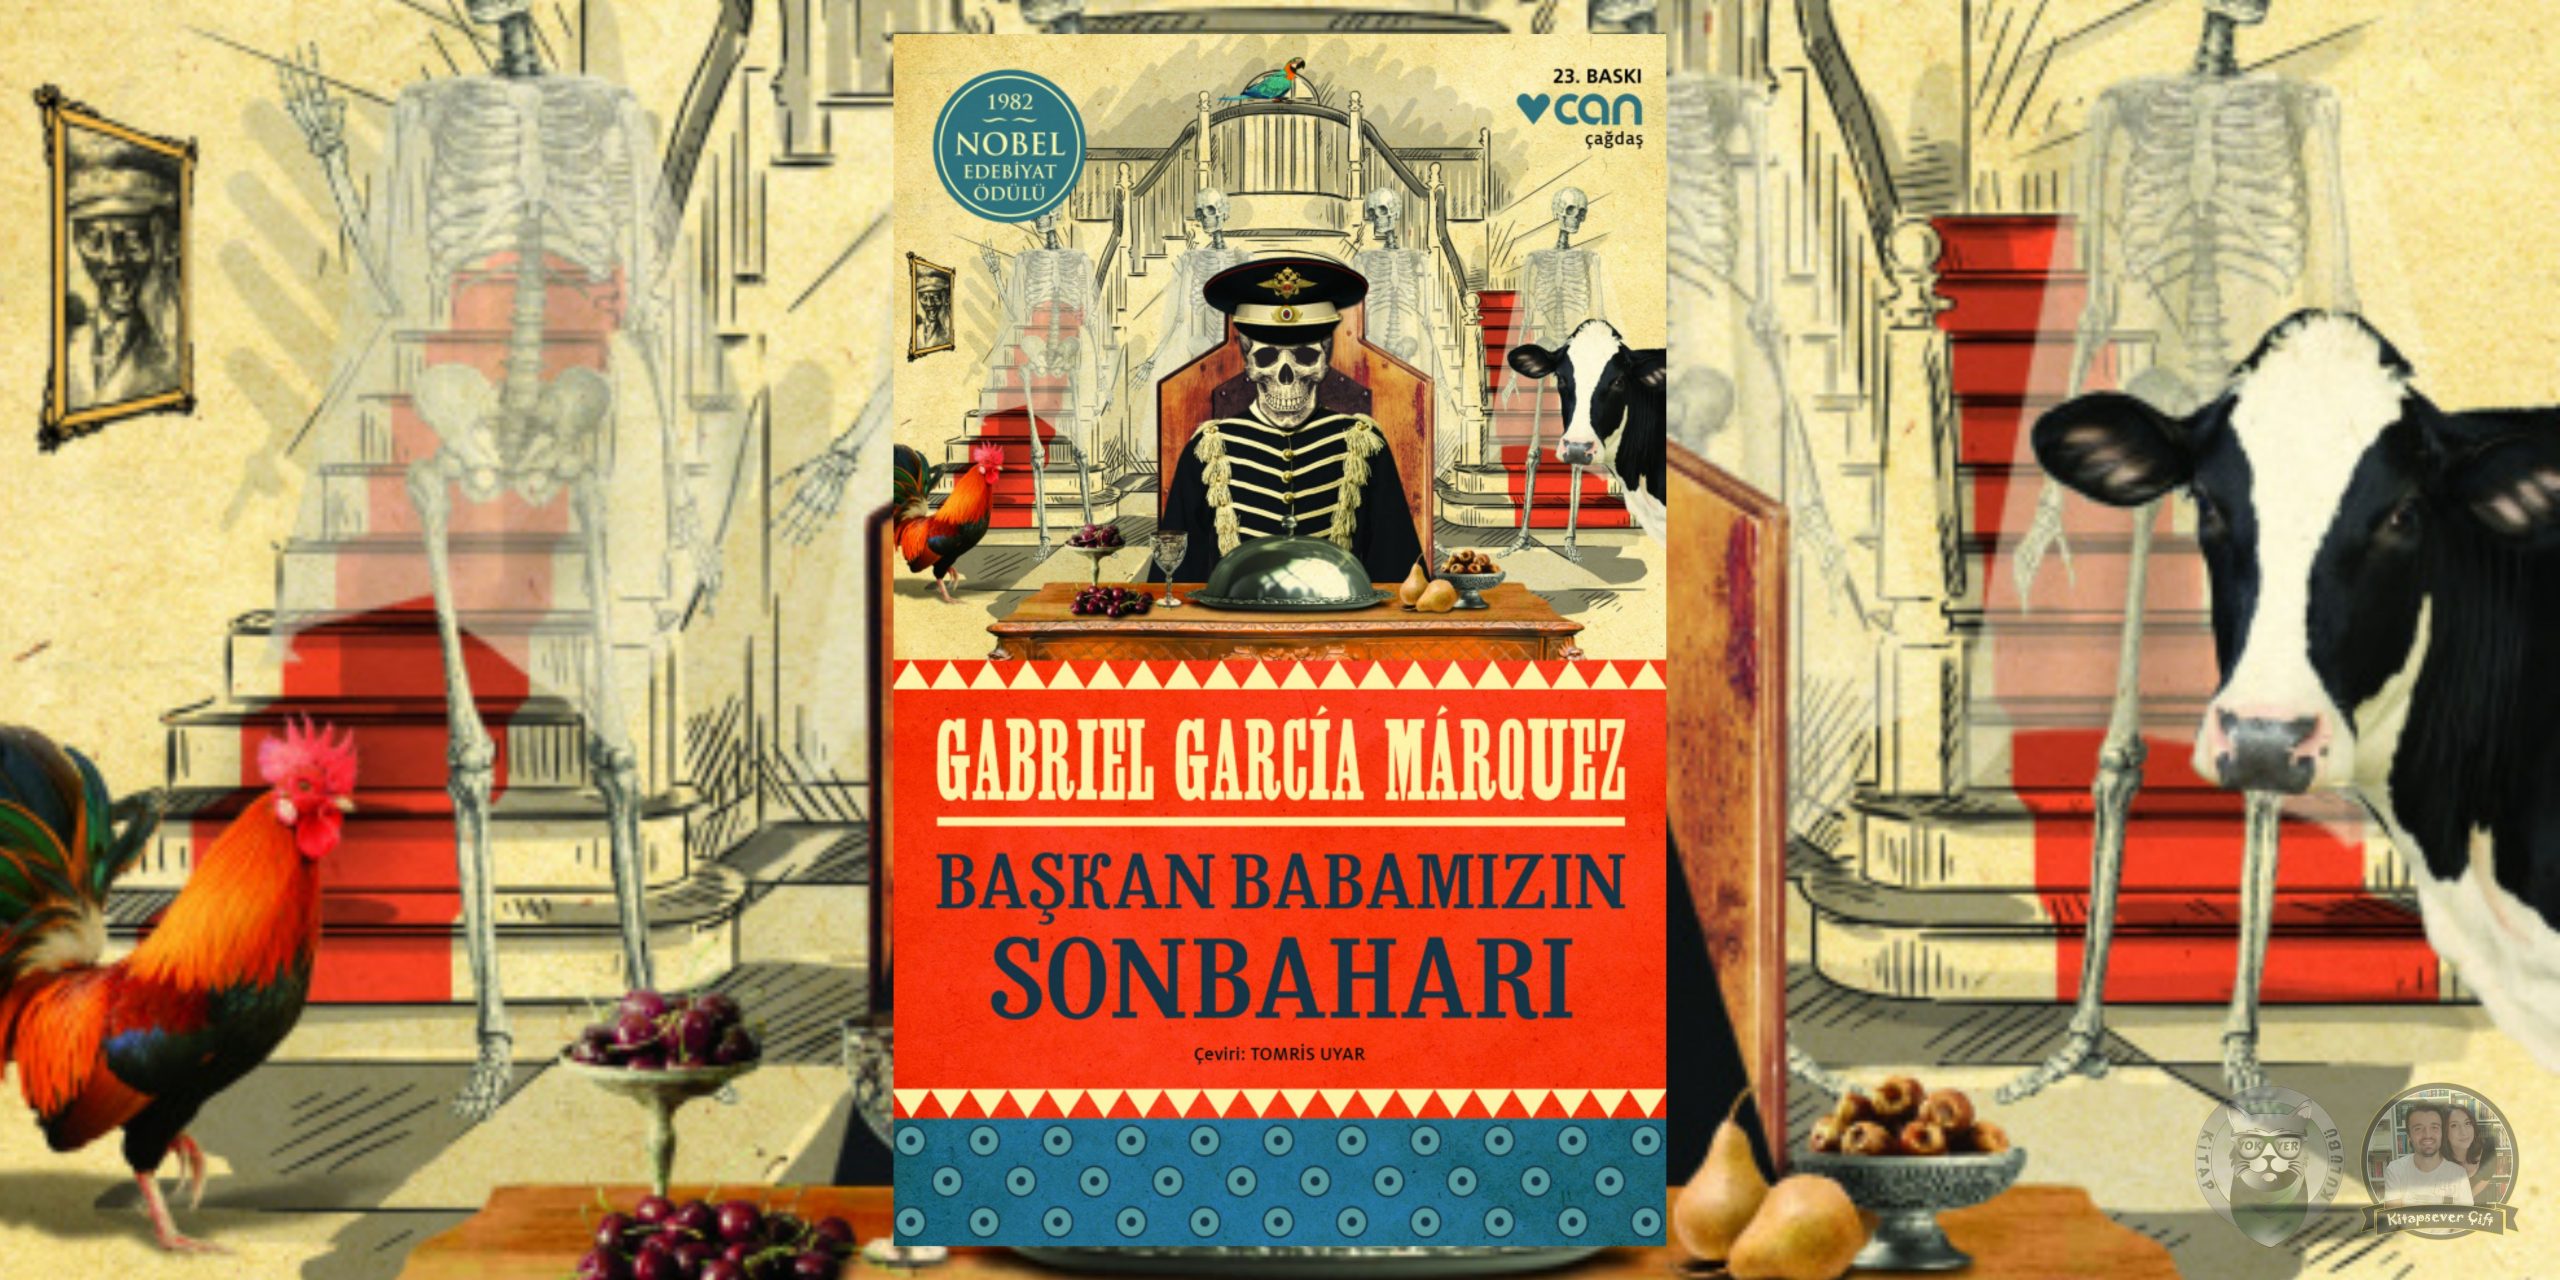 gabriel garcia marquez kitapları 6 – baskan babamizin sonbahari scaled